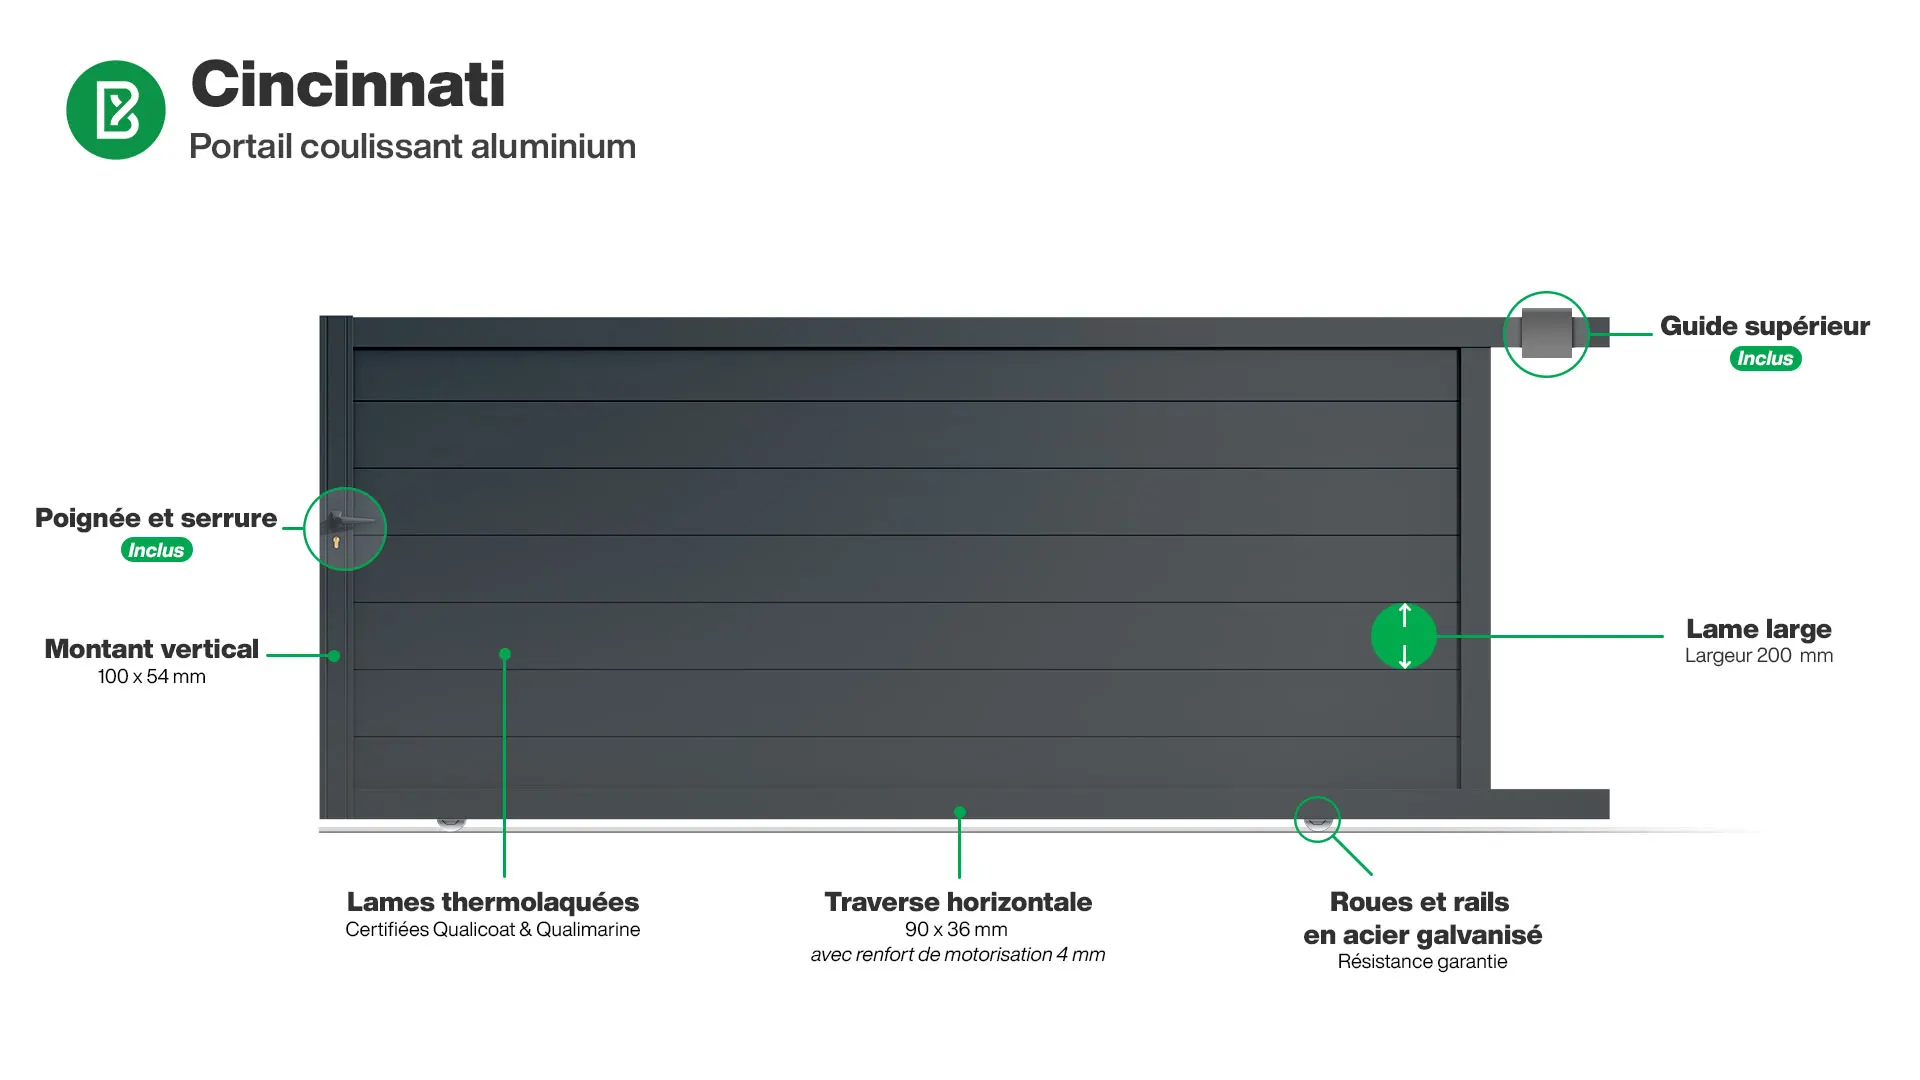 Portail : Infographie d'un portail coulissant aluminium modèle CINCINNATI